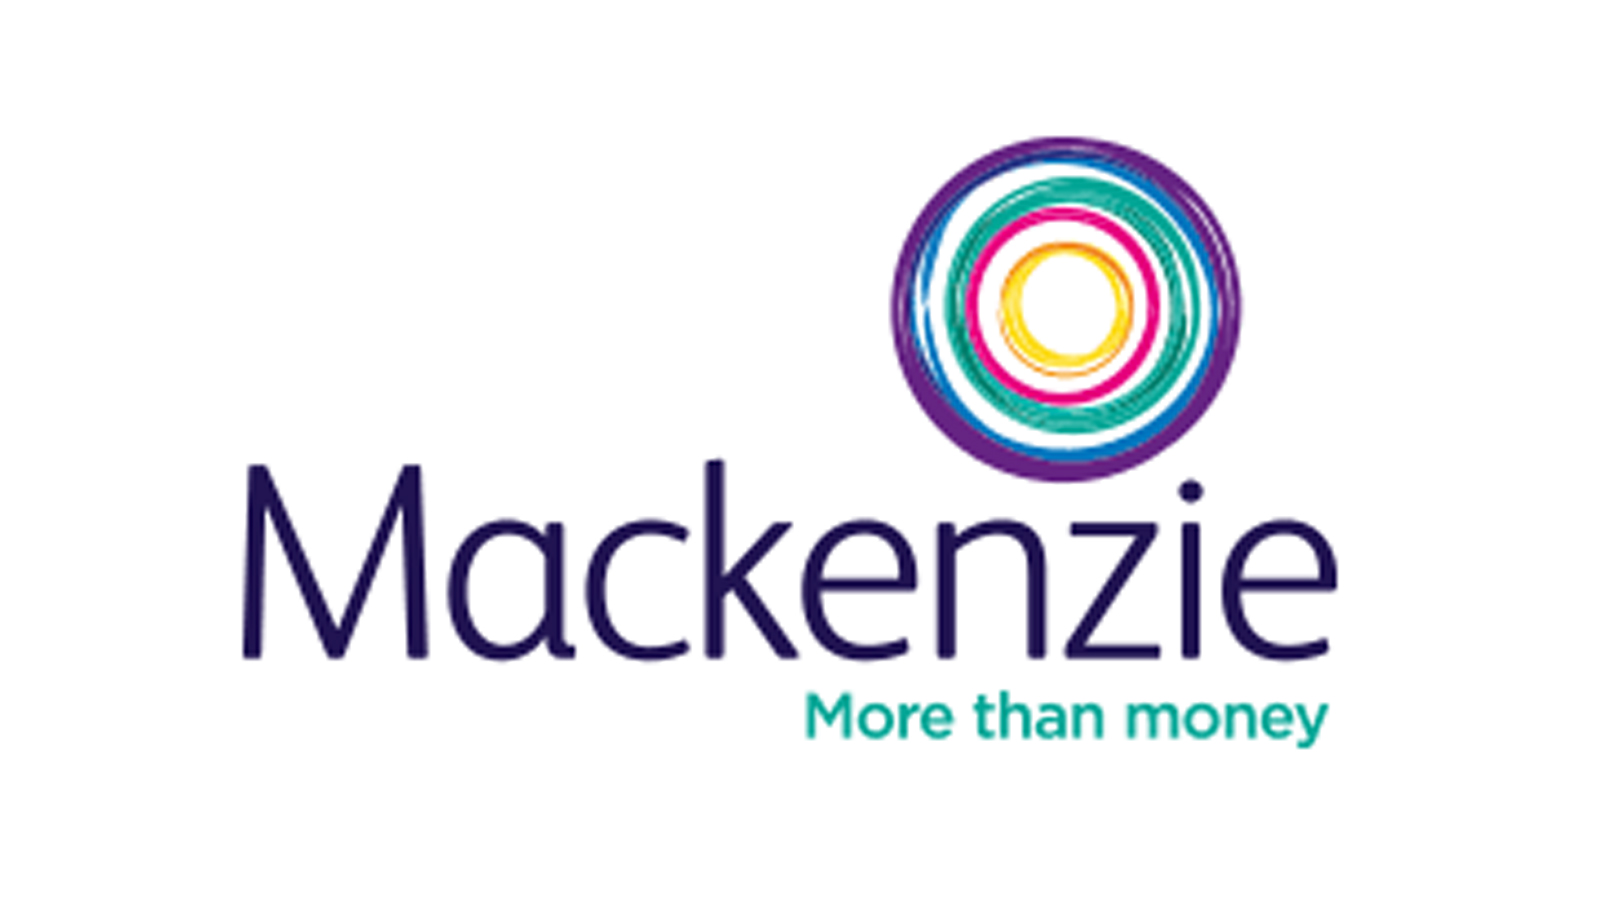 Mackenzie Financial Planning